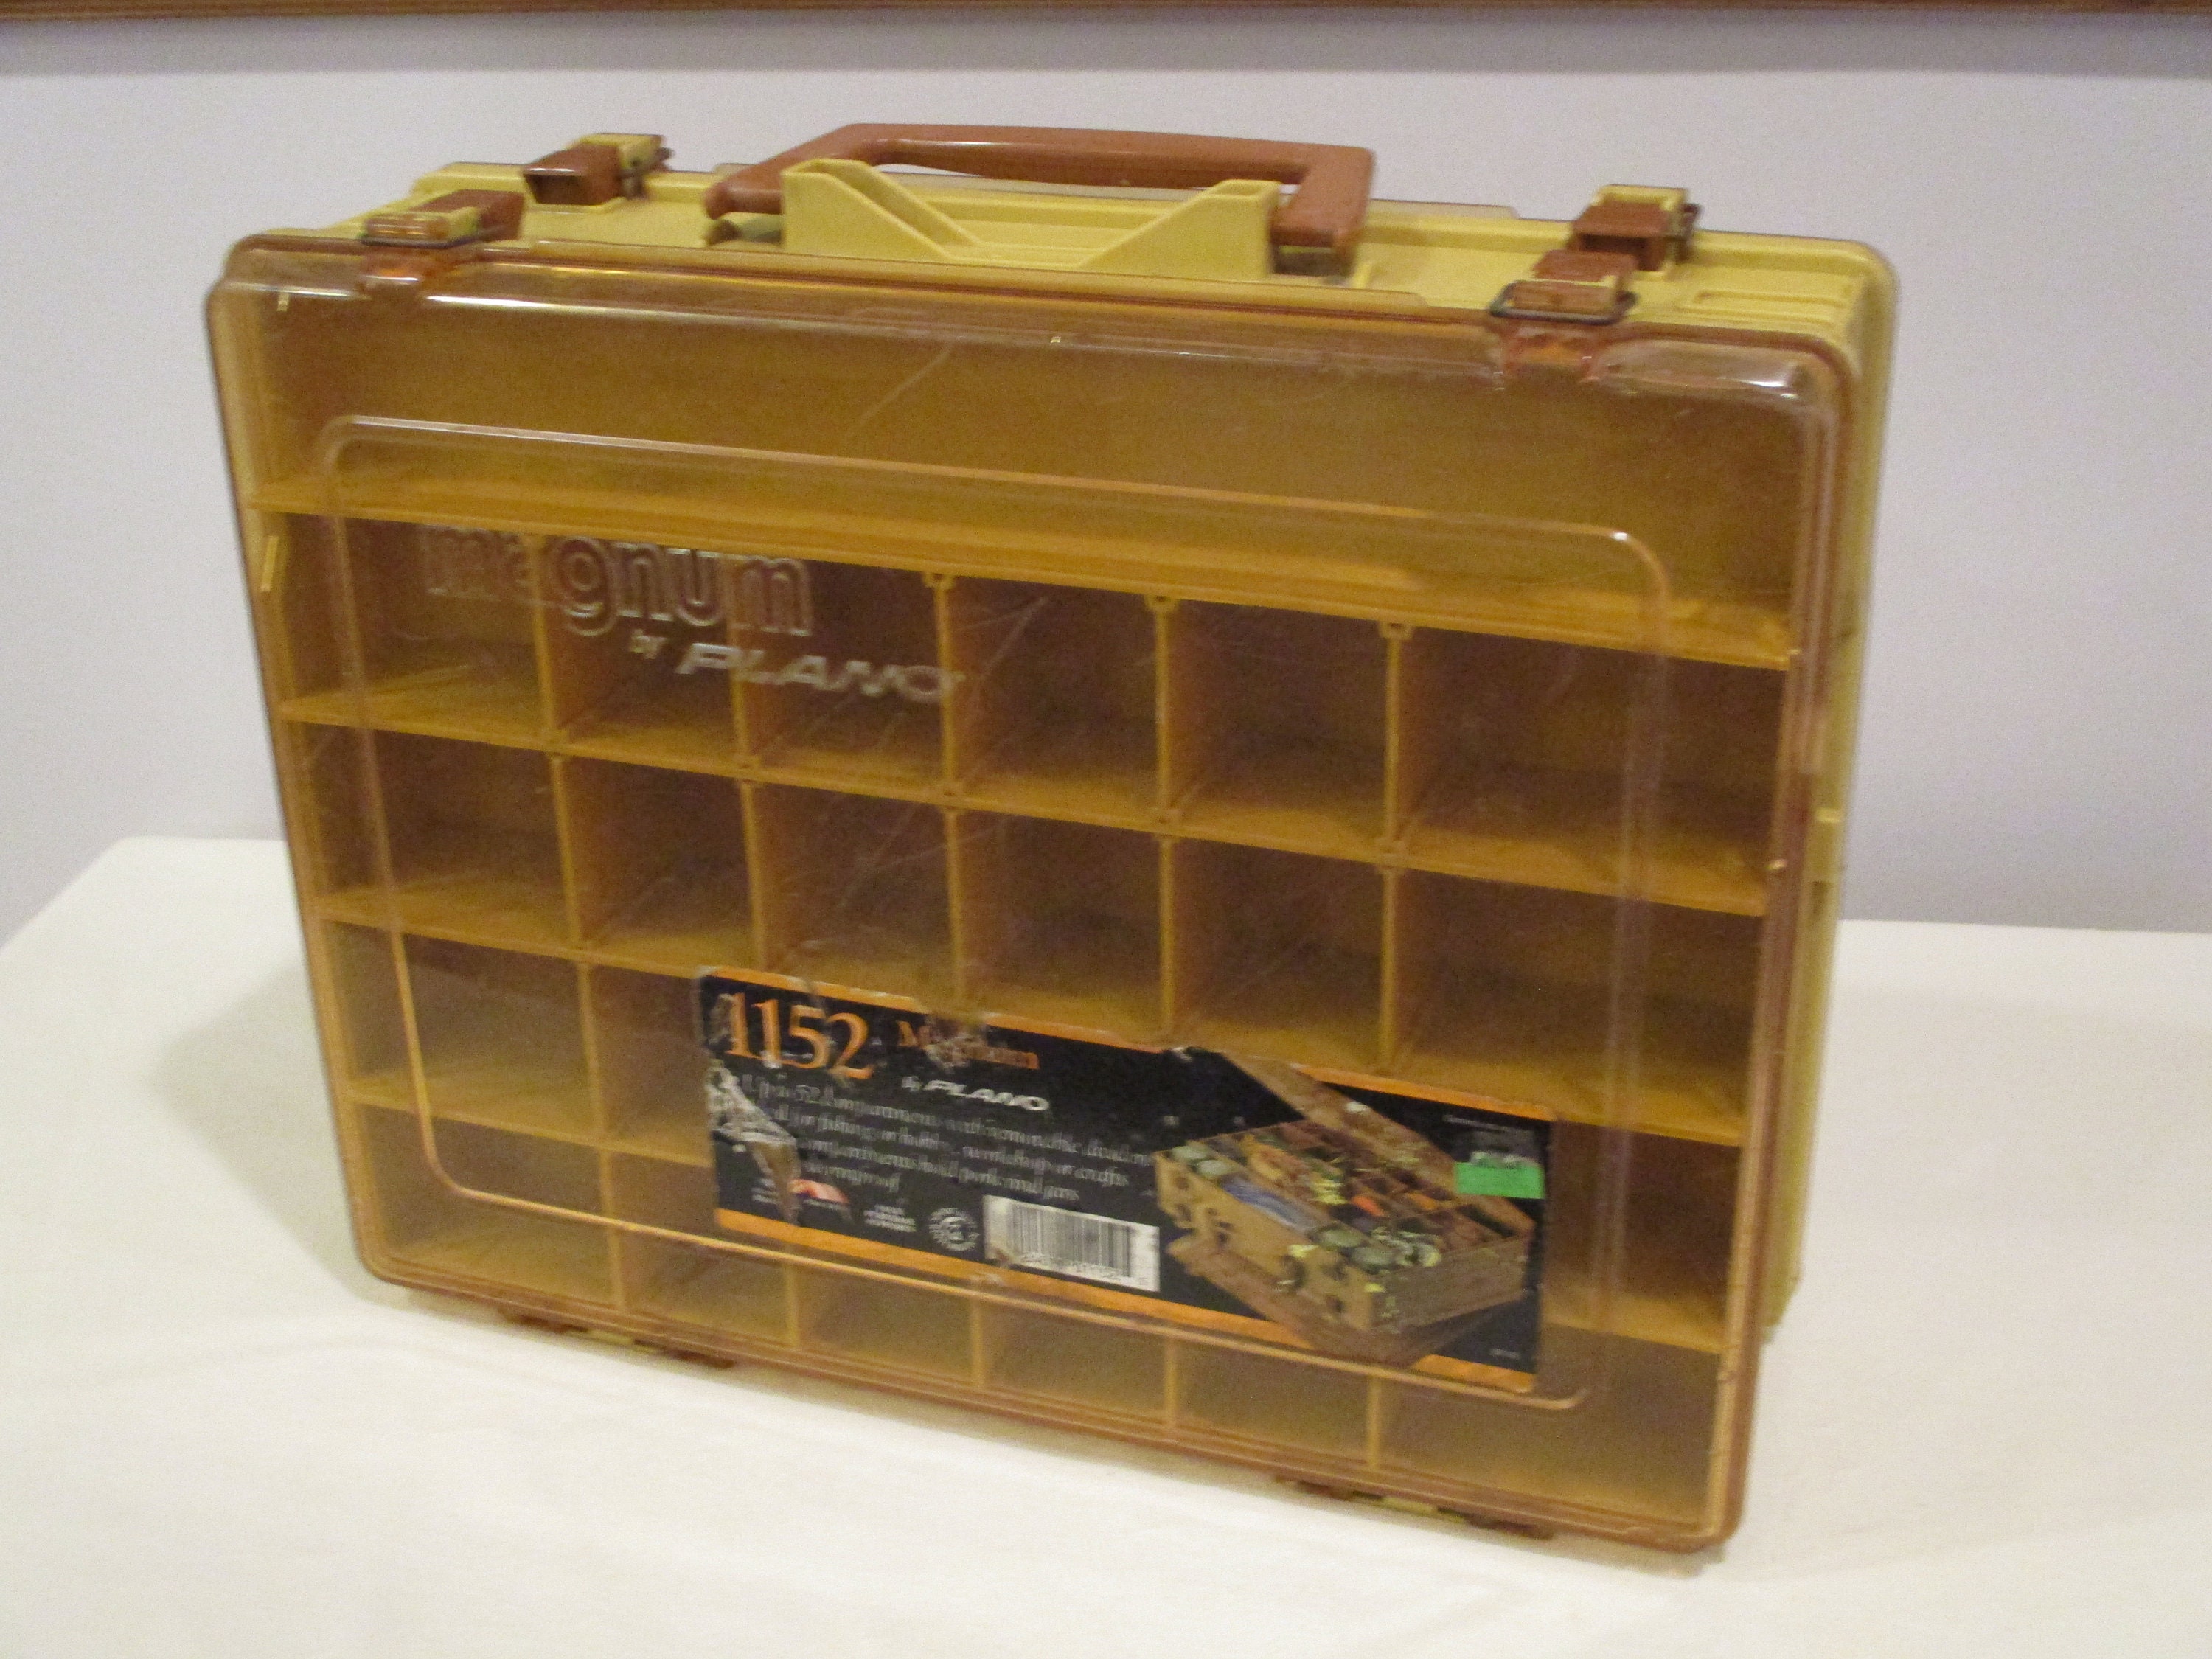 1152 Magnum Fishing Tackle Box,plano Fishing Tackle Box,large Fishing  Tackle Box,box With Compartments,craft Supply Box,art Supply Box -   Canada